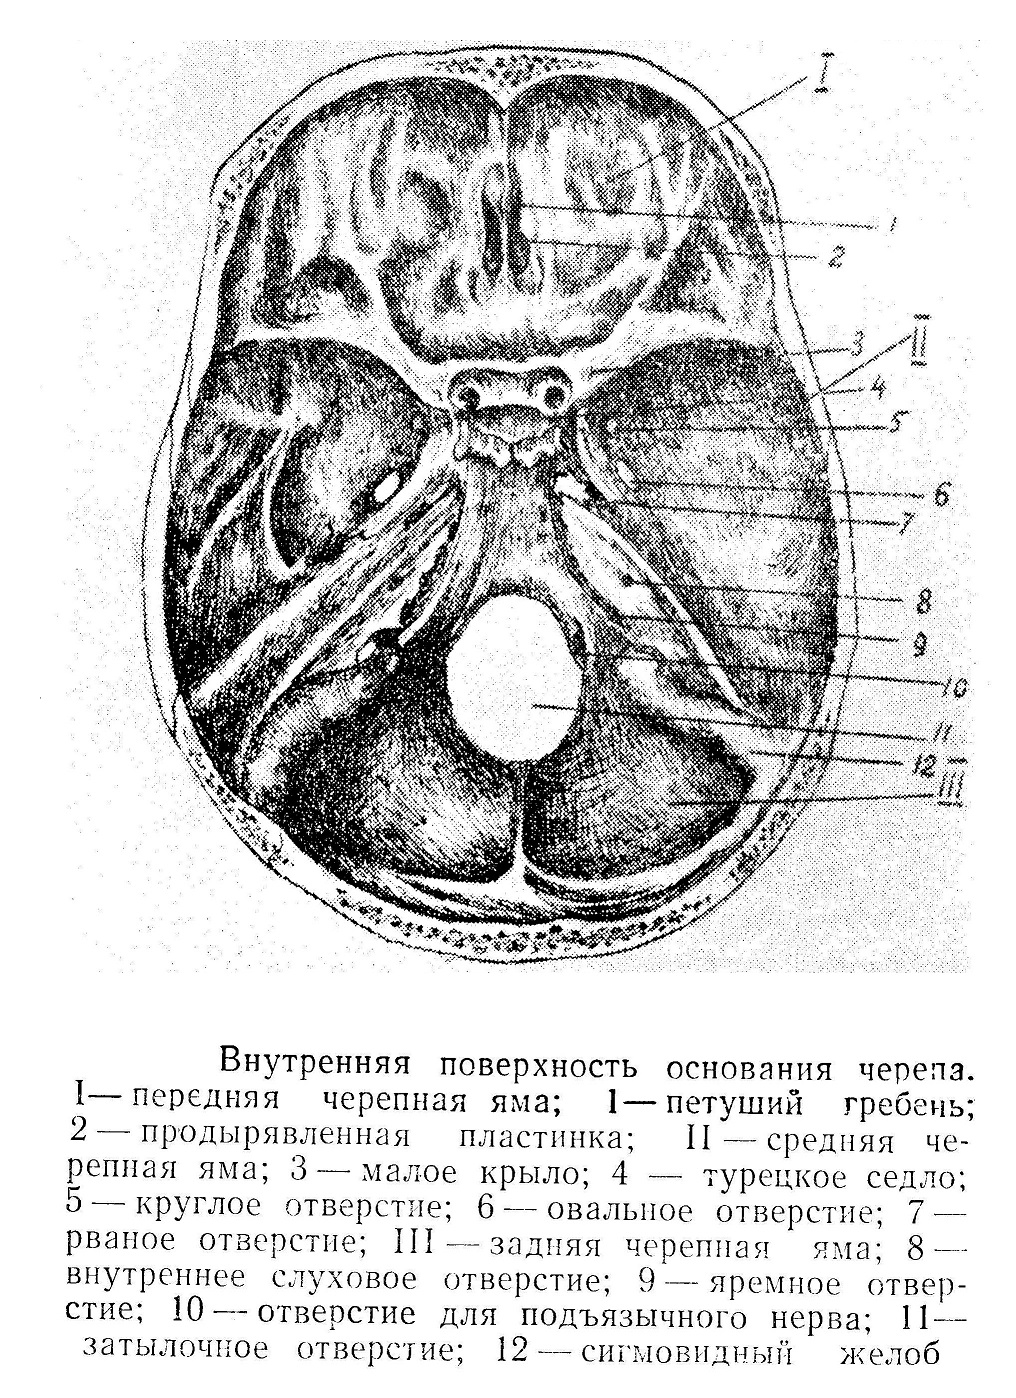 Внутренняя поверхность основания черепа